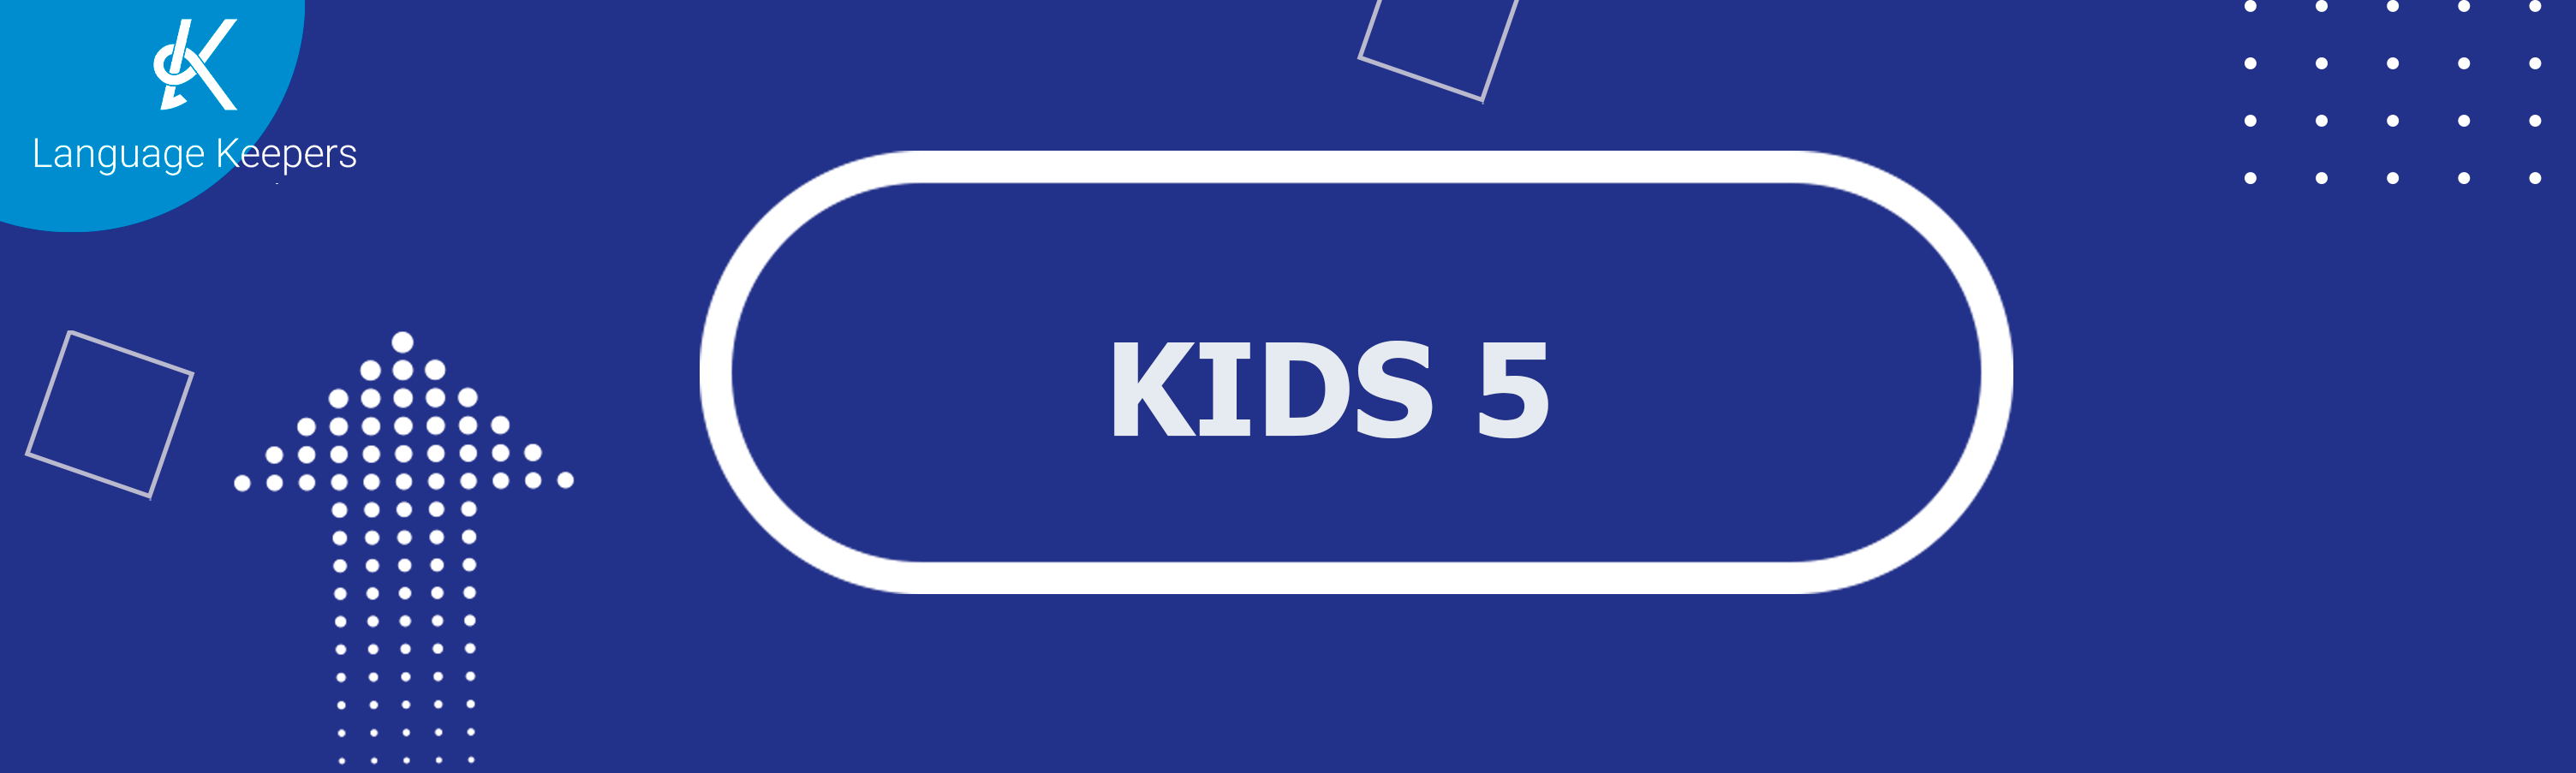 KIDS 5